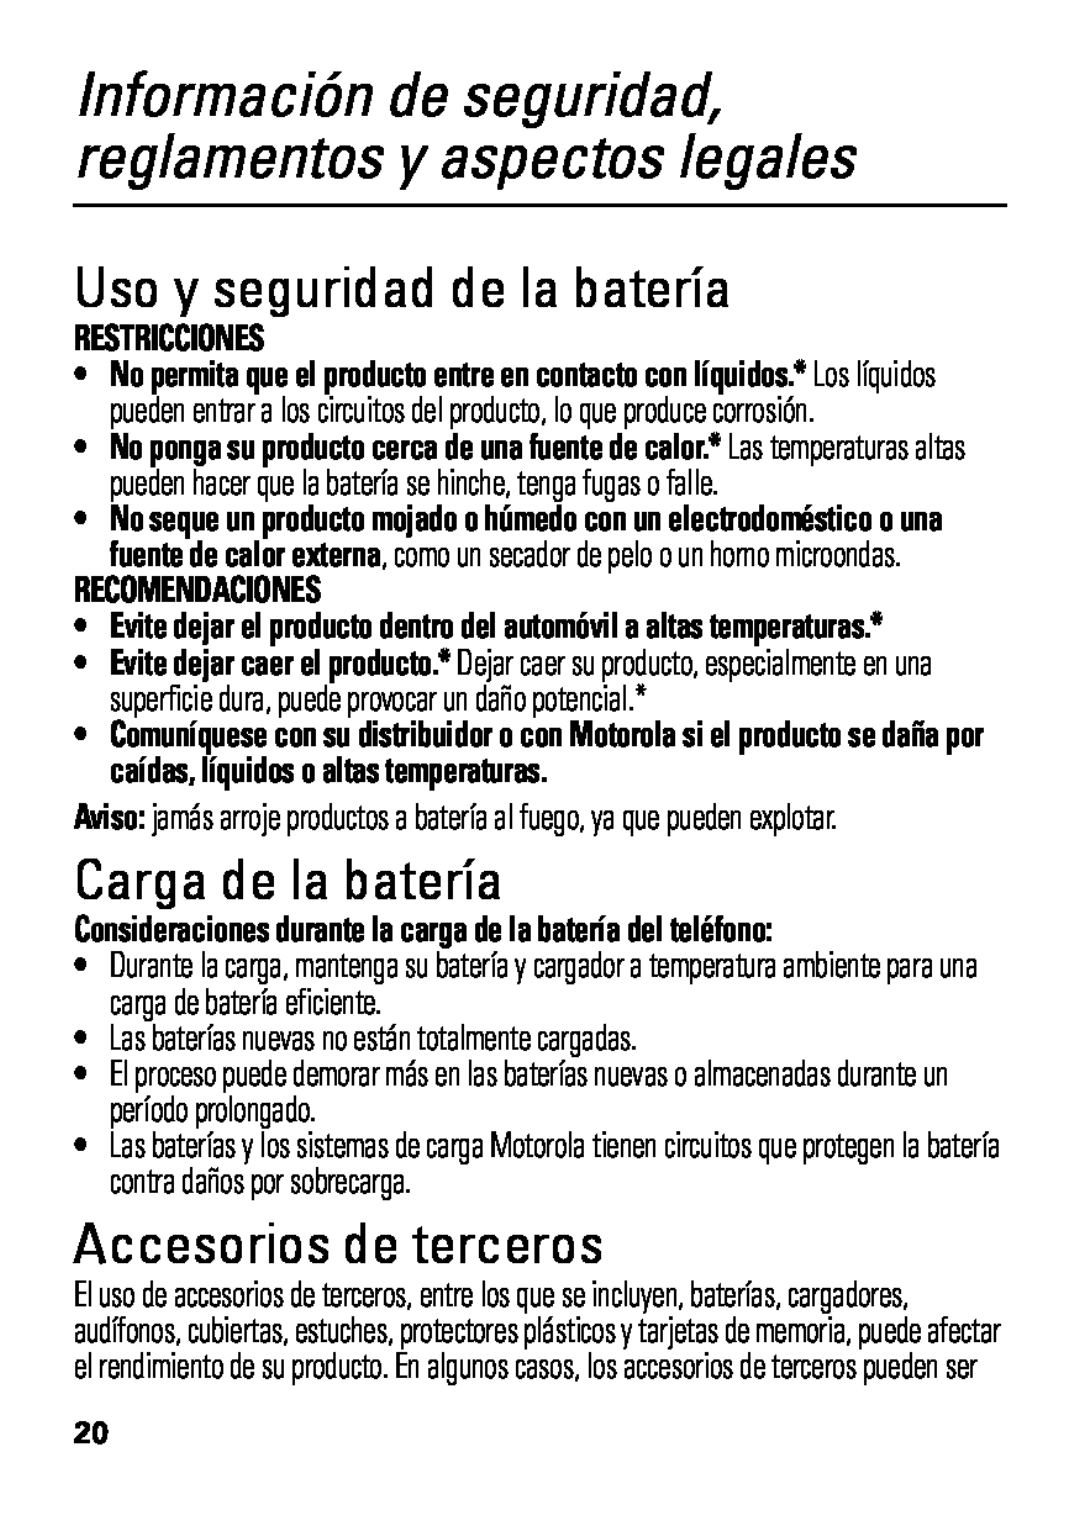 Motorola HX550 Uso y seguridad de la batería, Carga de la batería, Accesorios de terceros, Restricciones, Recomendaciones 